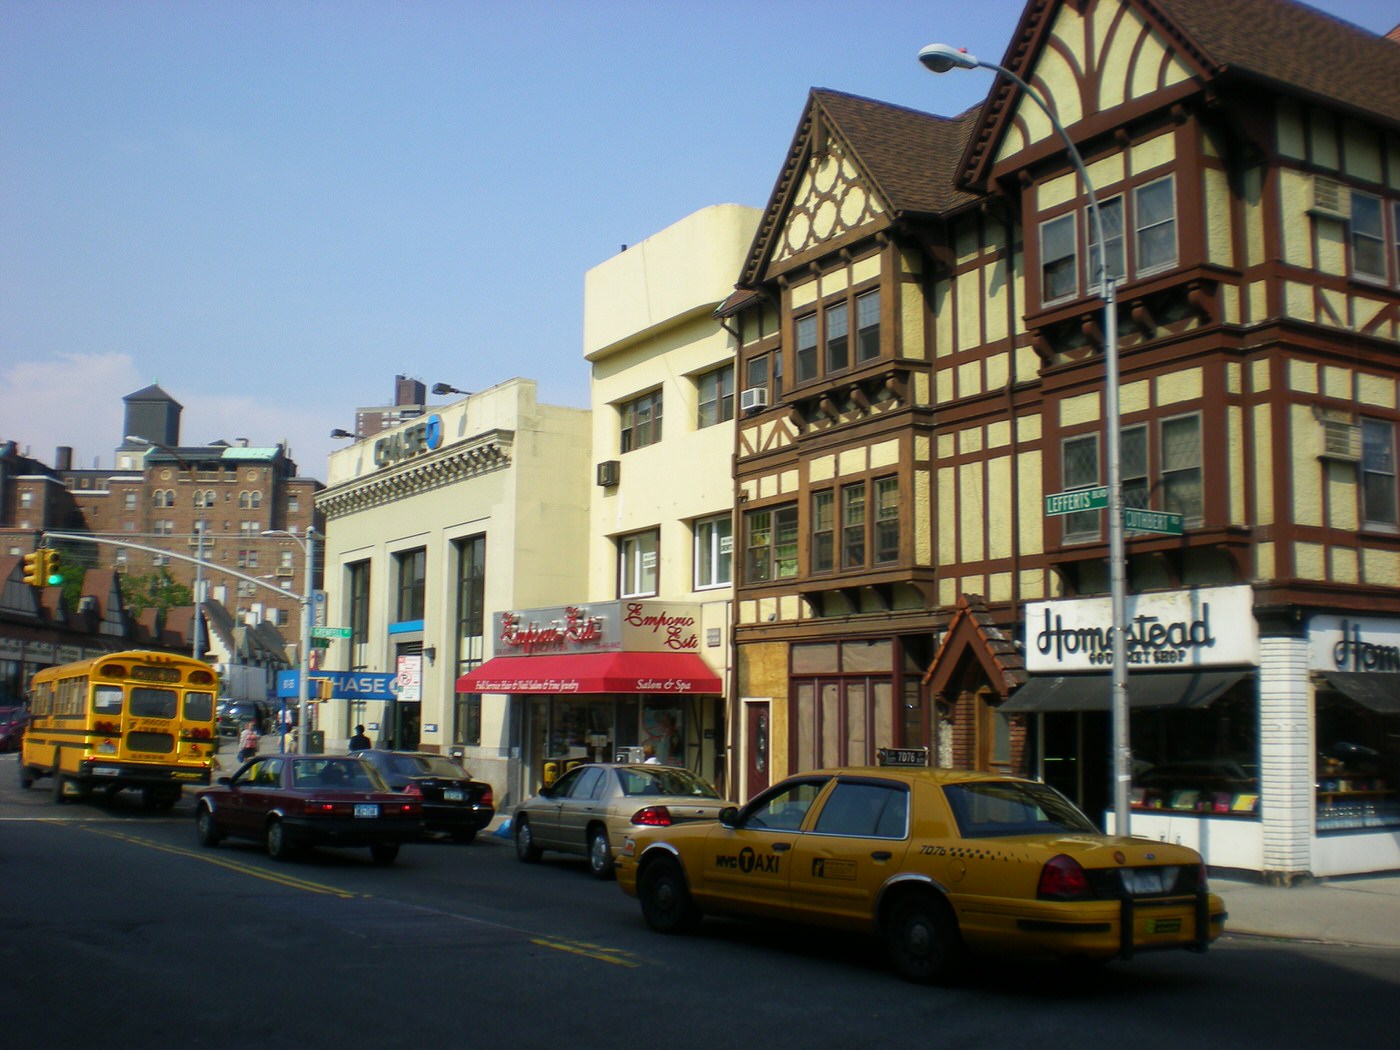 Kew Gardens Street, Queens, 2008.